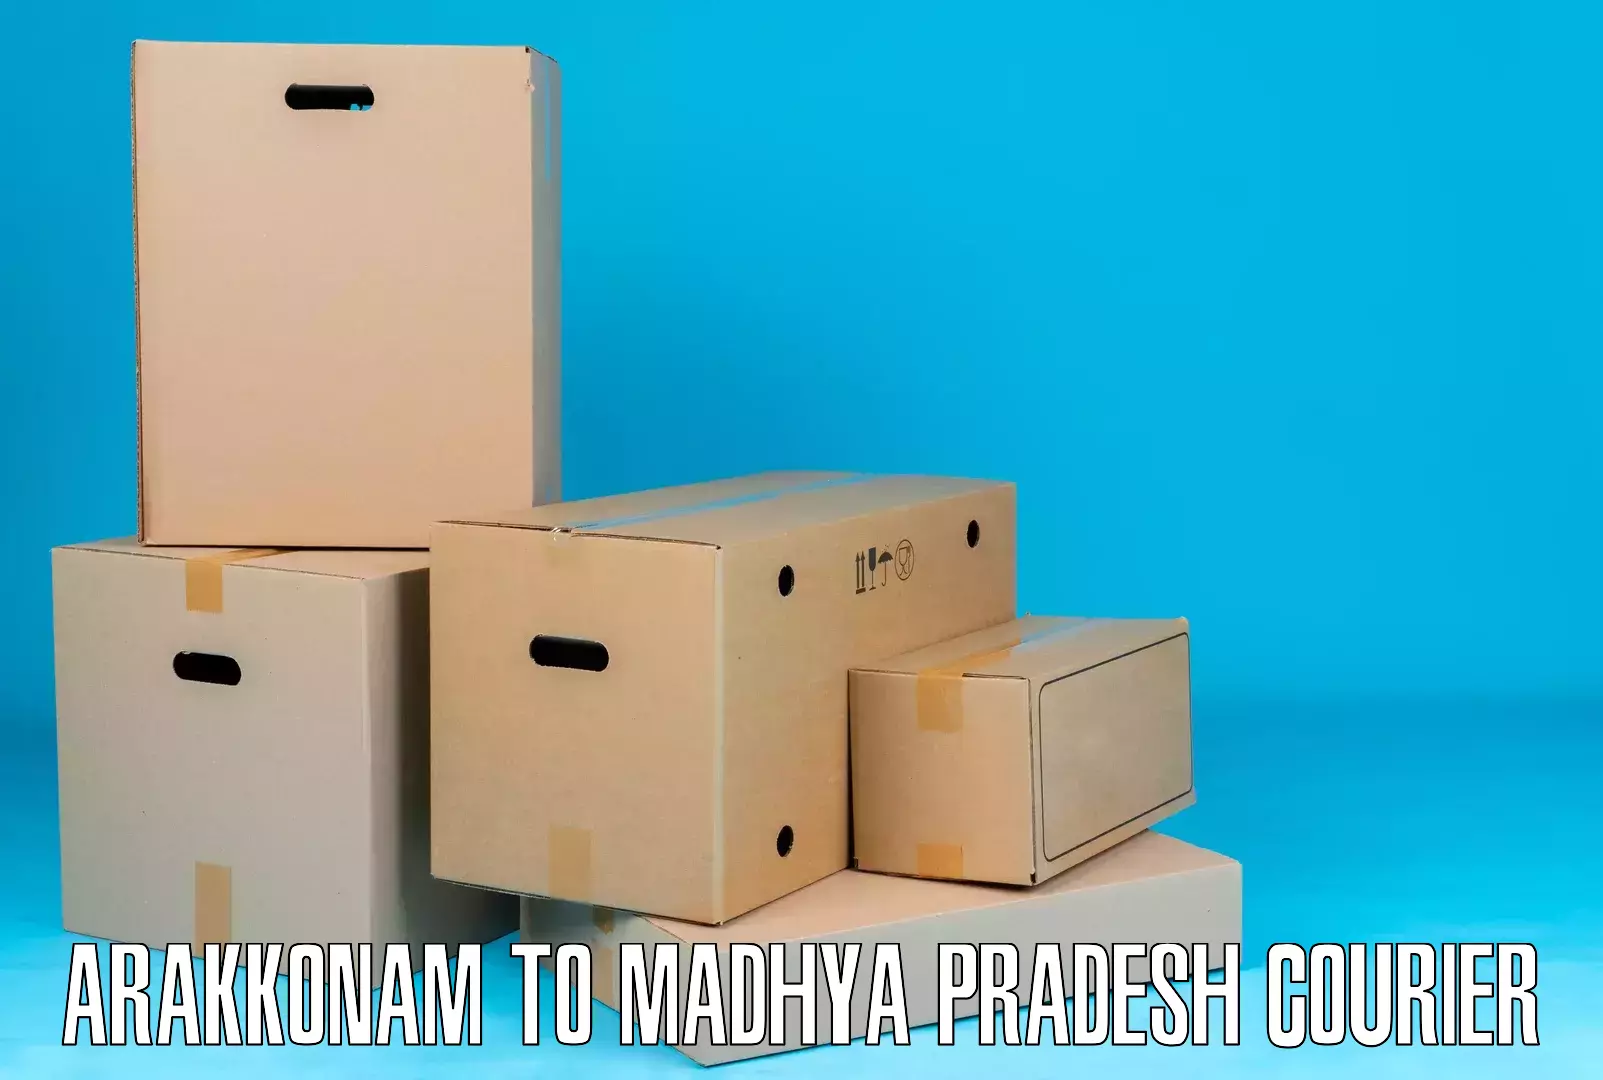 Logistics service provider Arakkonam to Pipariya